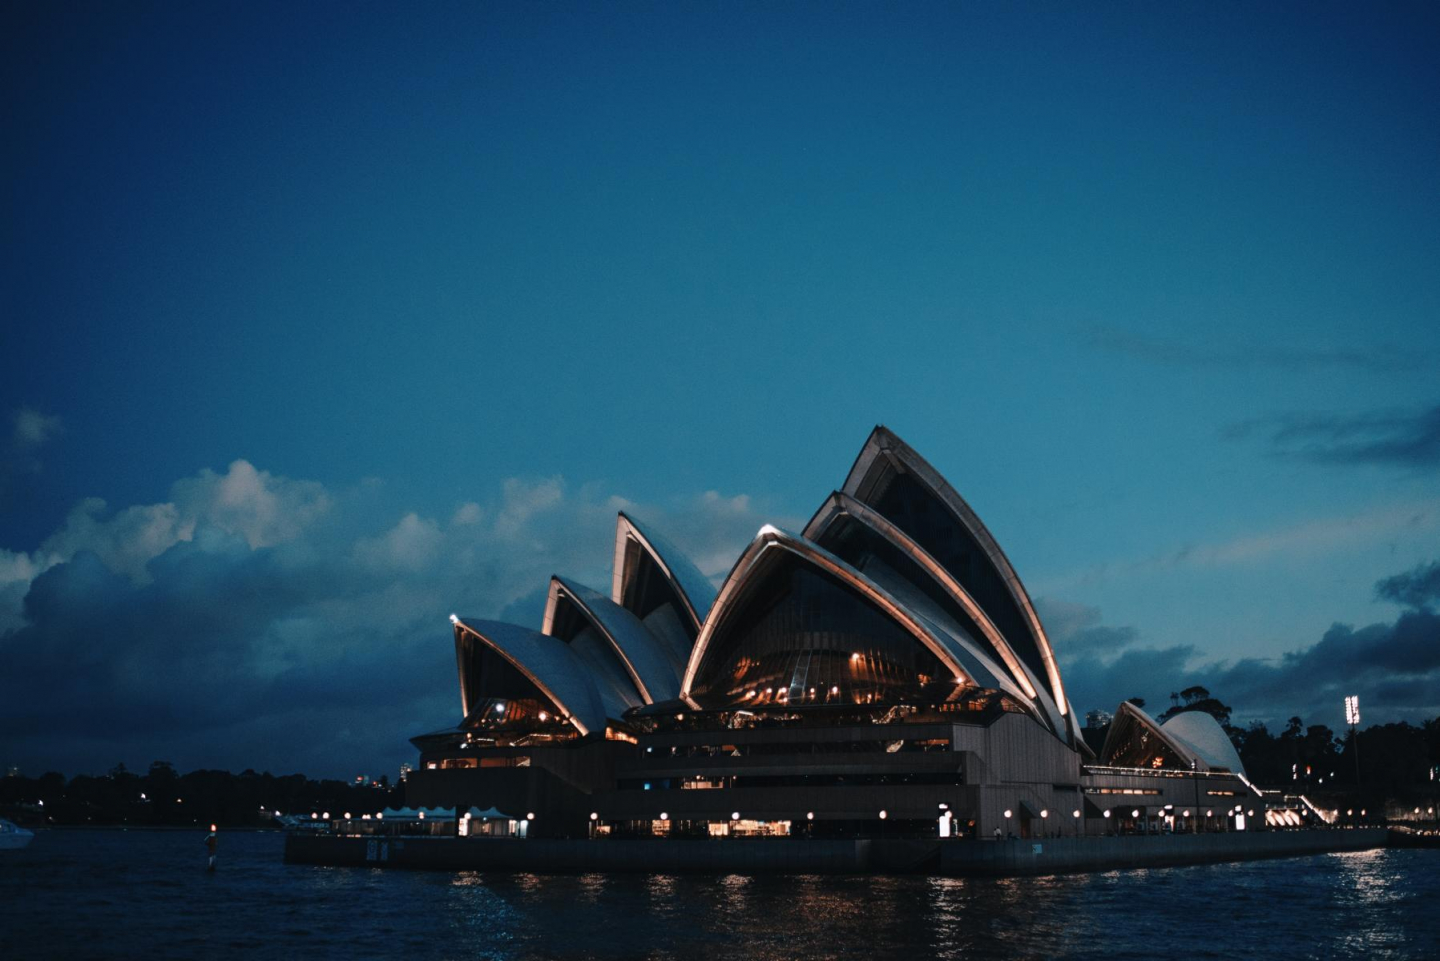 Das Opernhaus Sydney kurz vor Sonnenuntergang